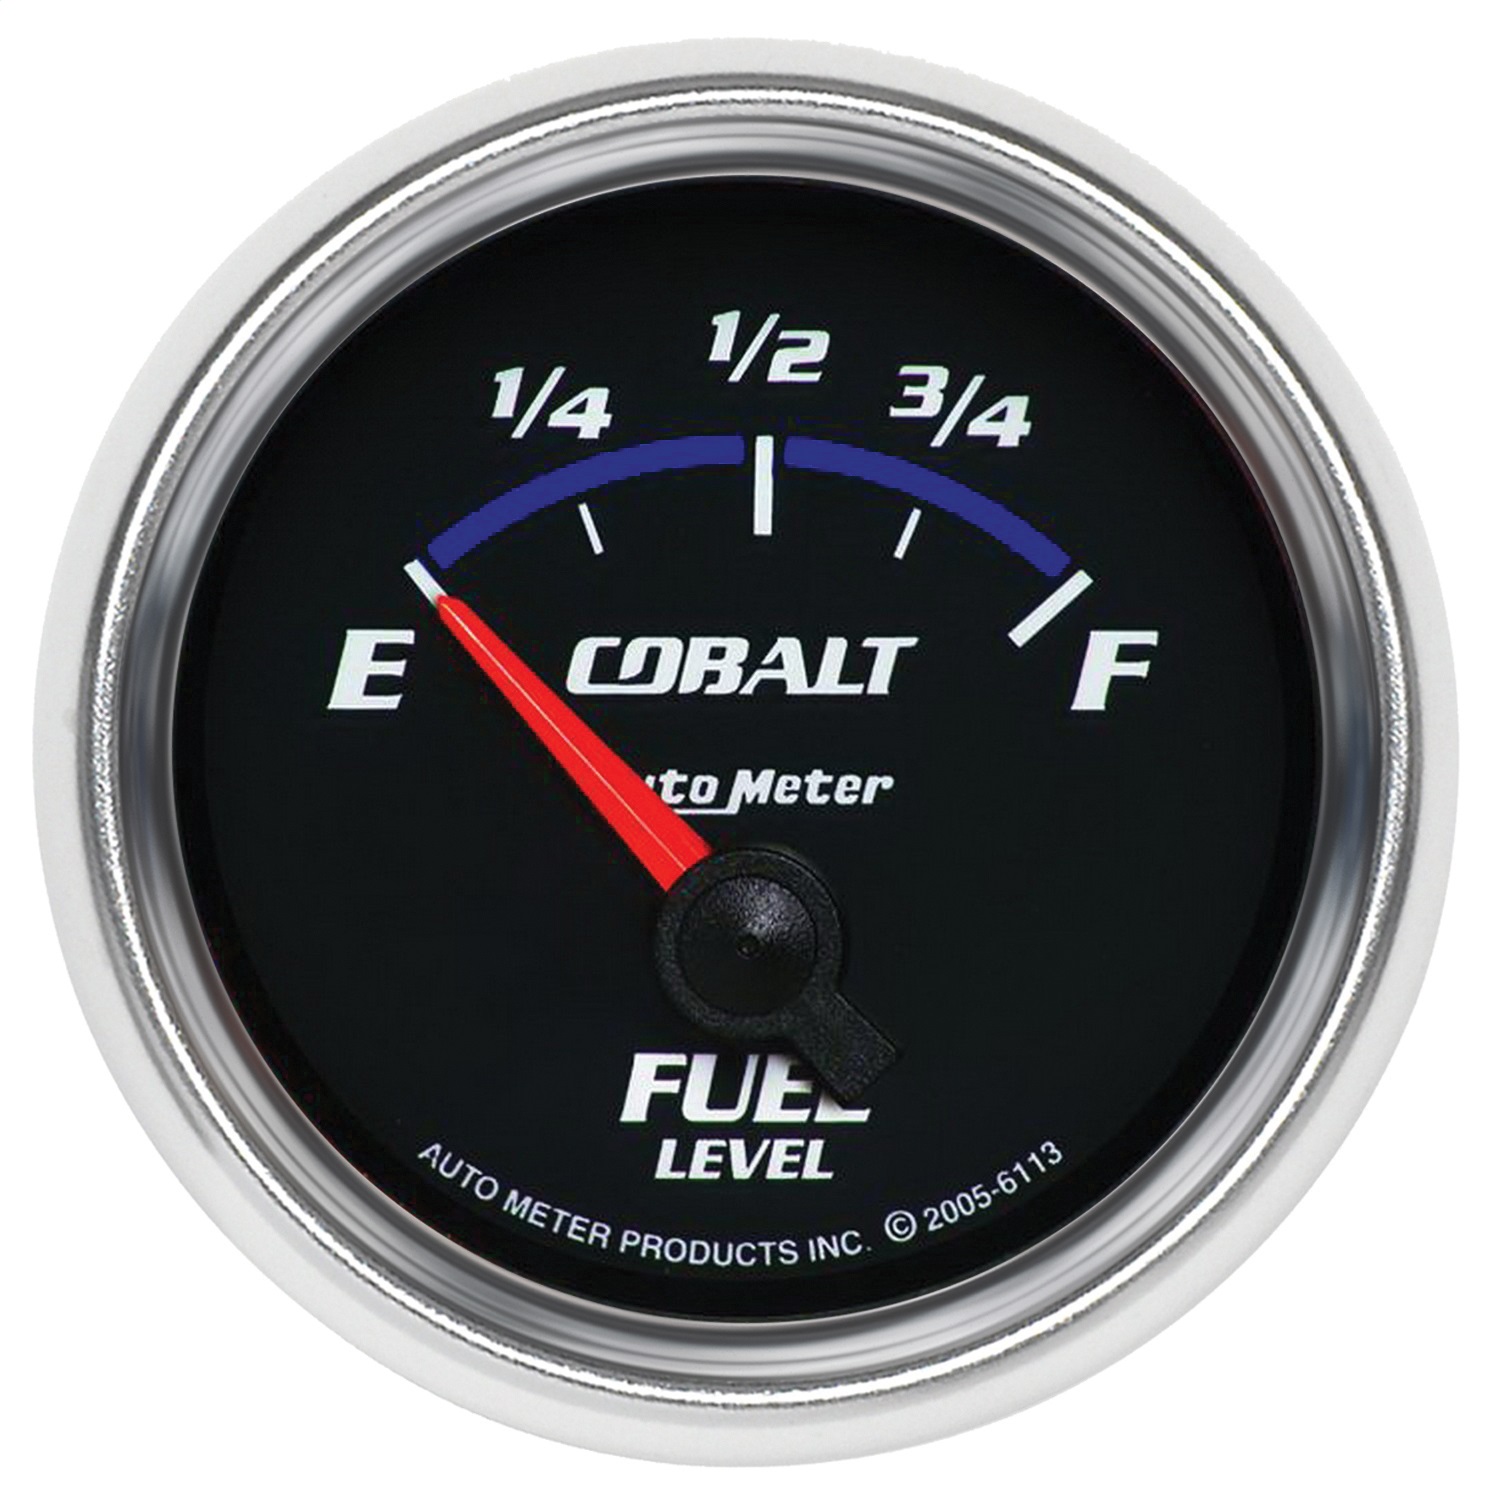 Auto Meter Auto Meter 6113 Cobalt; Electric Fuel Level Gauge